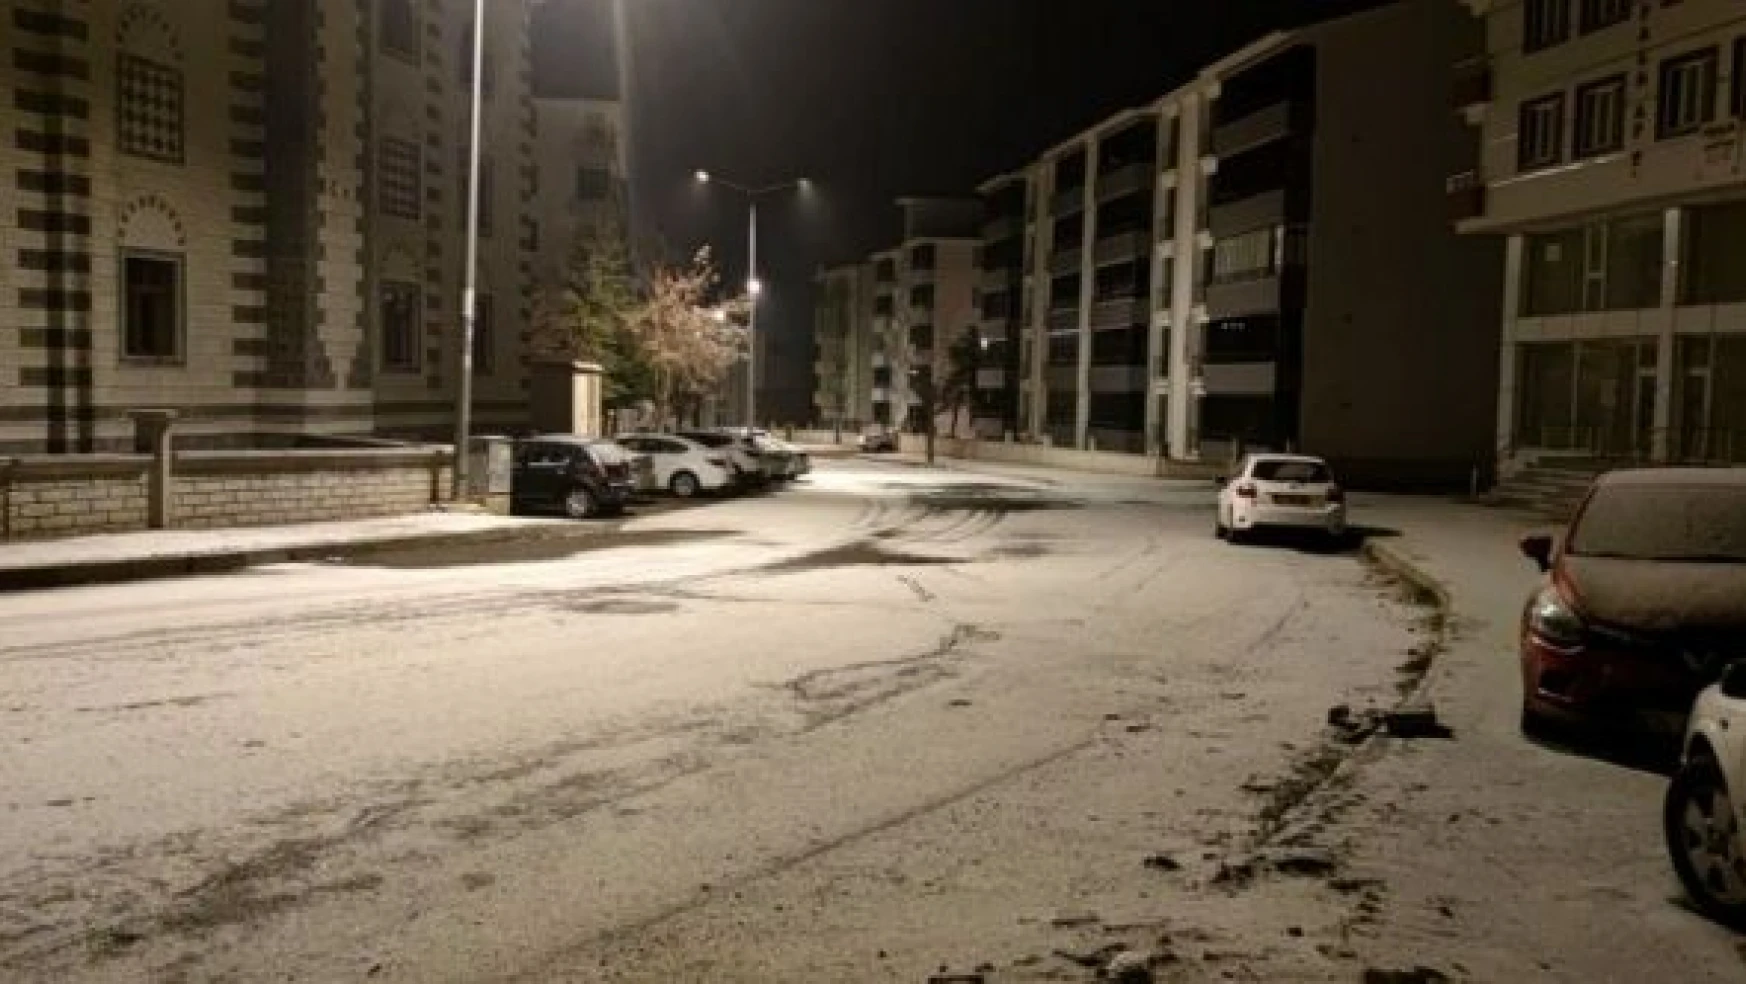 Bingöl değil sanki İzmir... Ocak bitiyor kar düşmedi